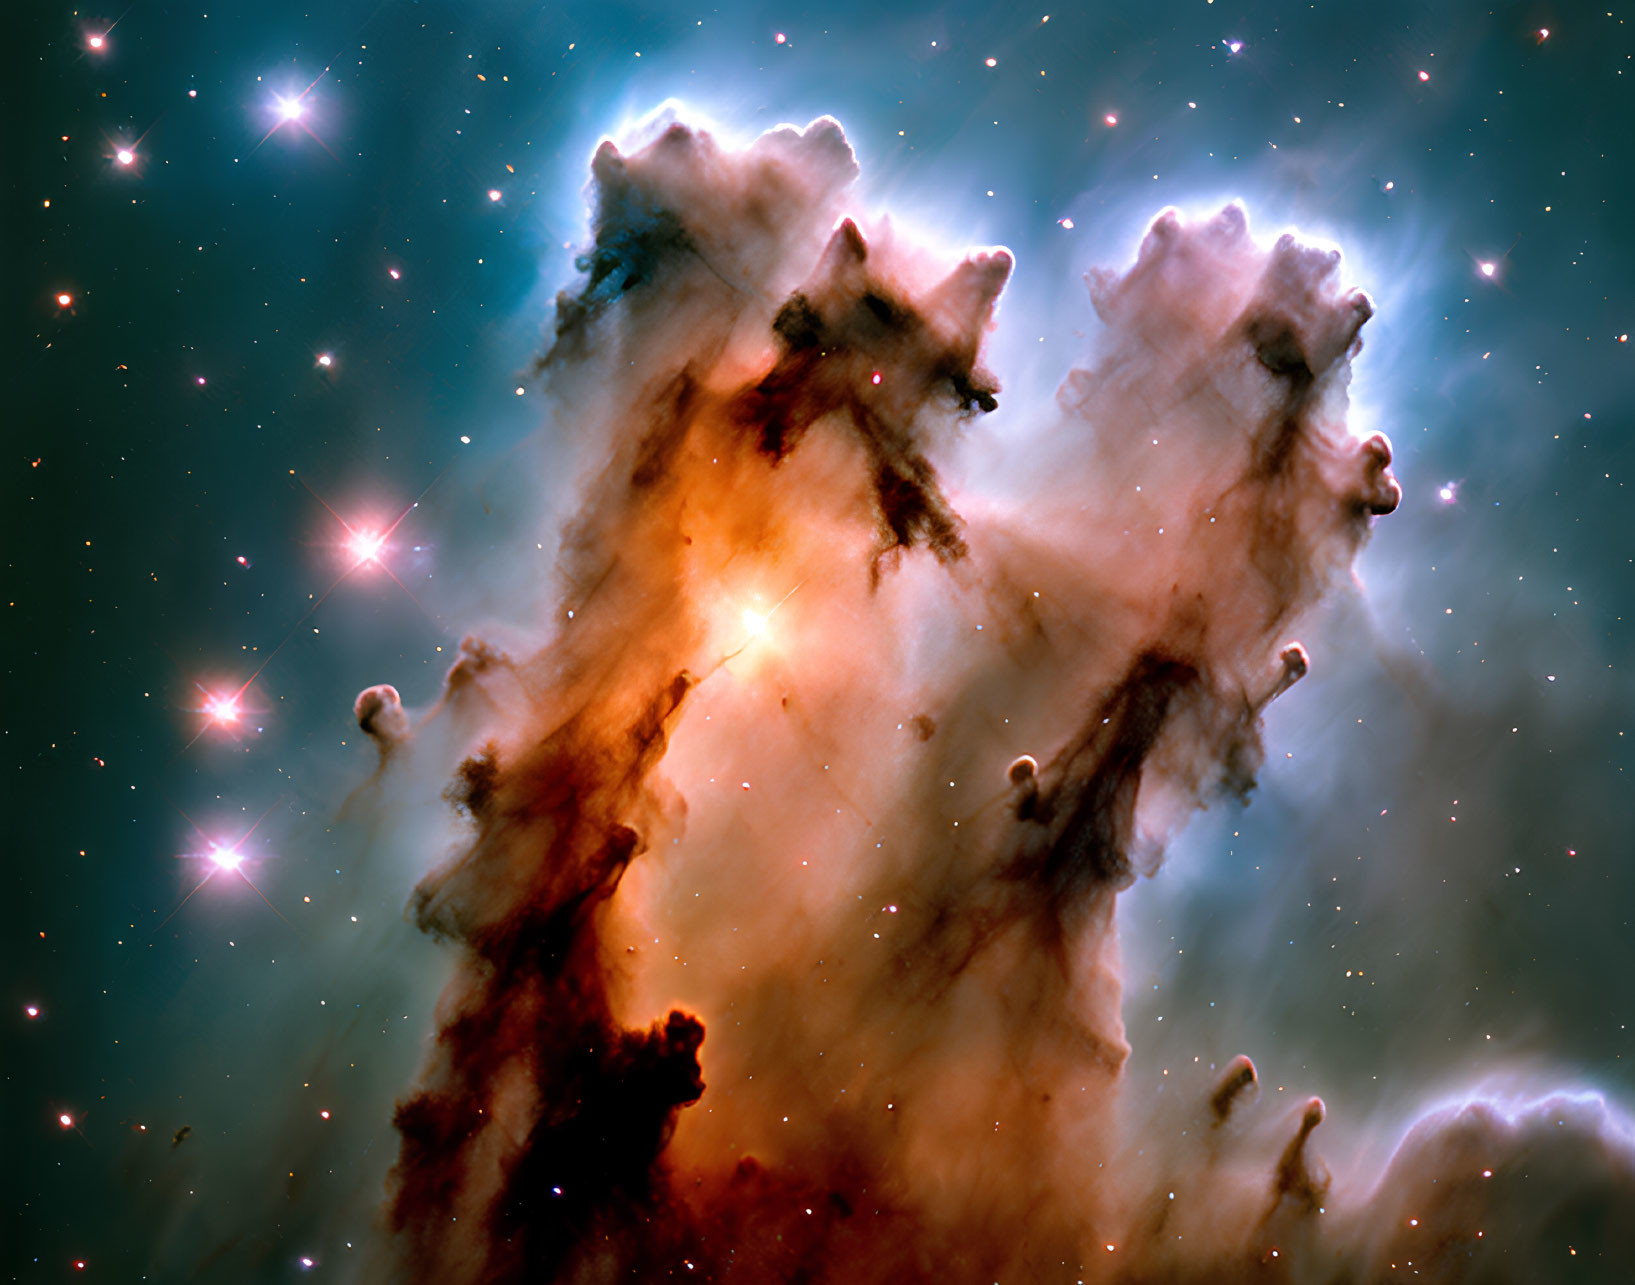 Interstellar Gas and Dust Pillars Illuminated by Starlight